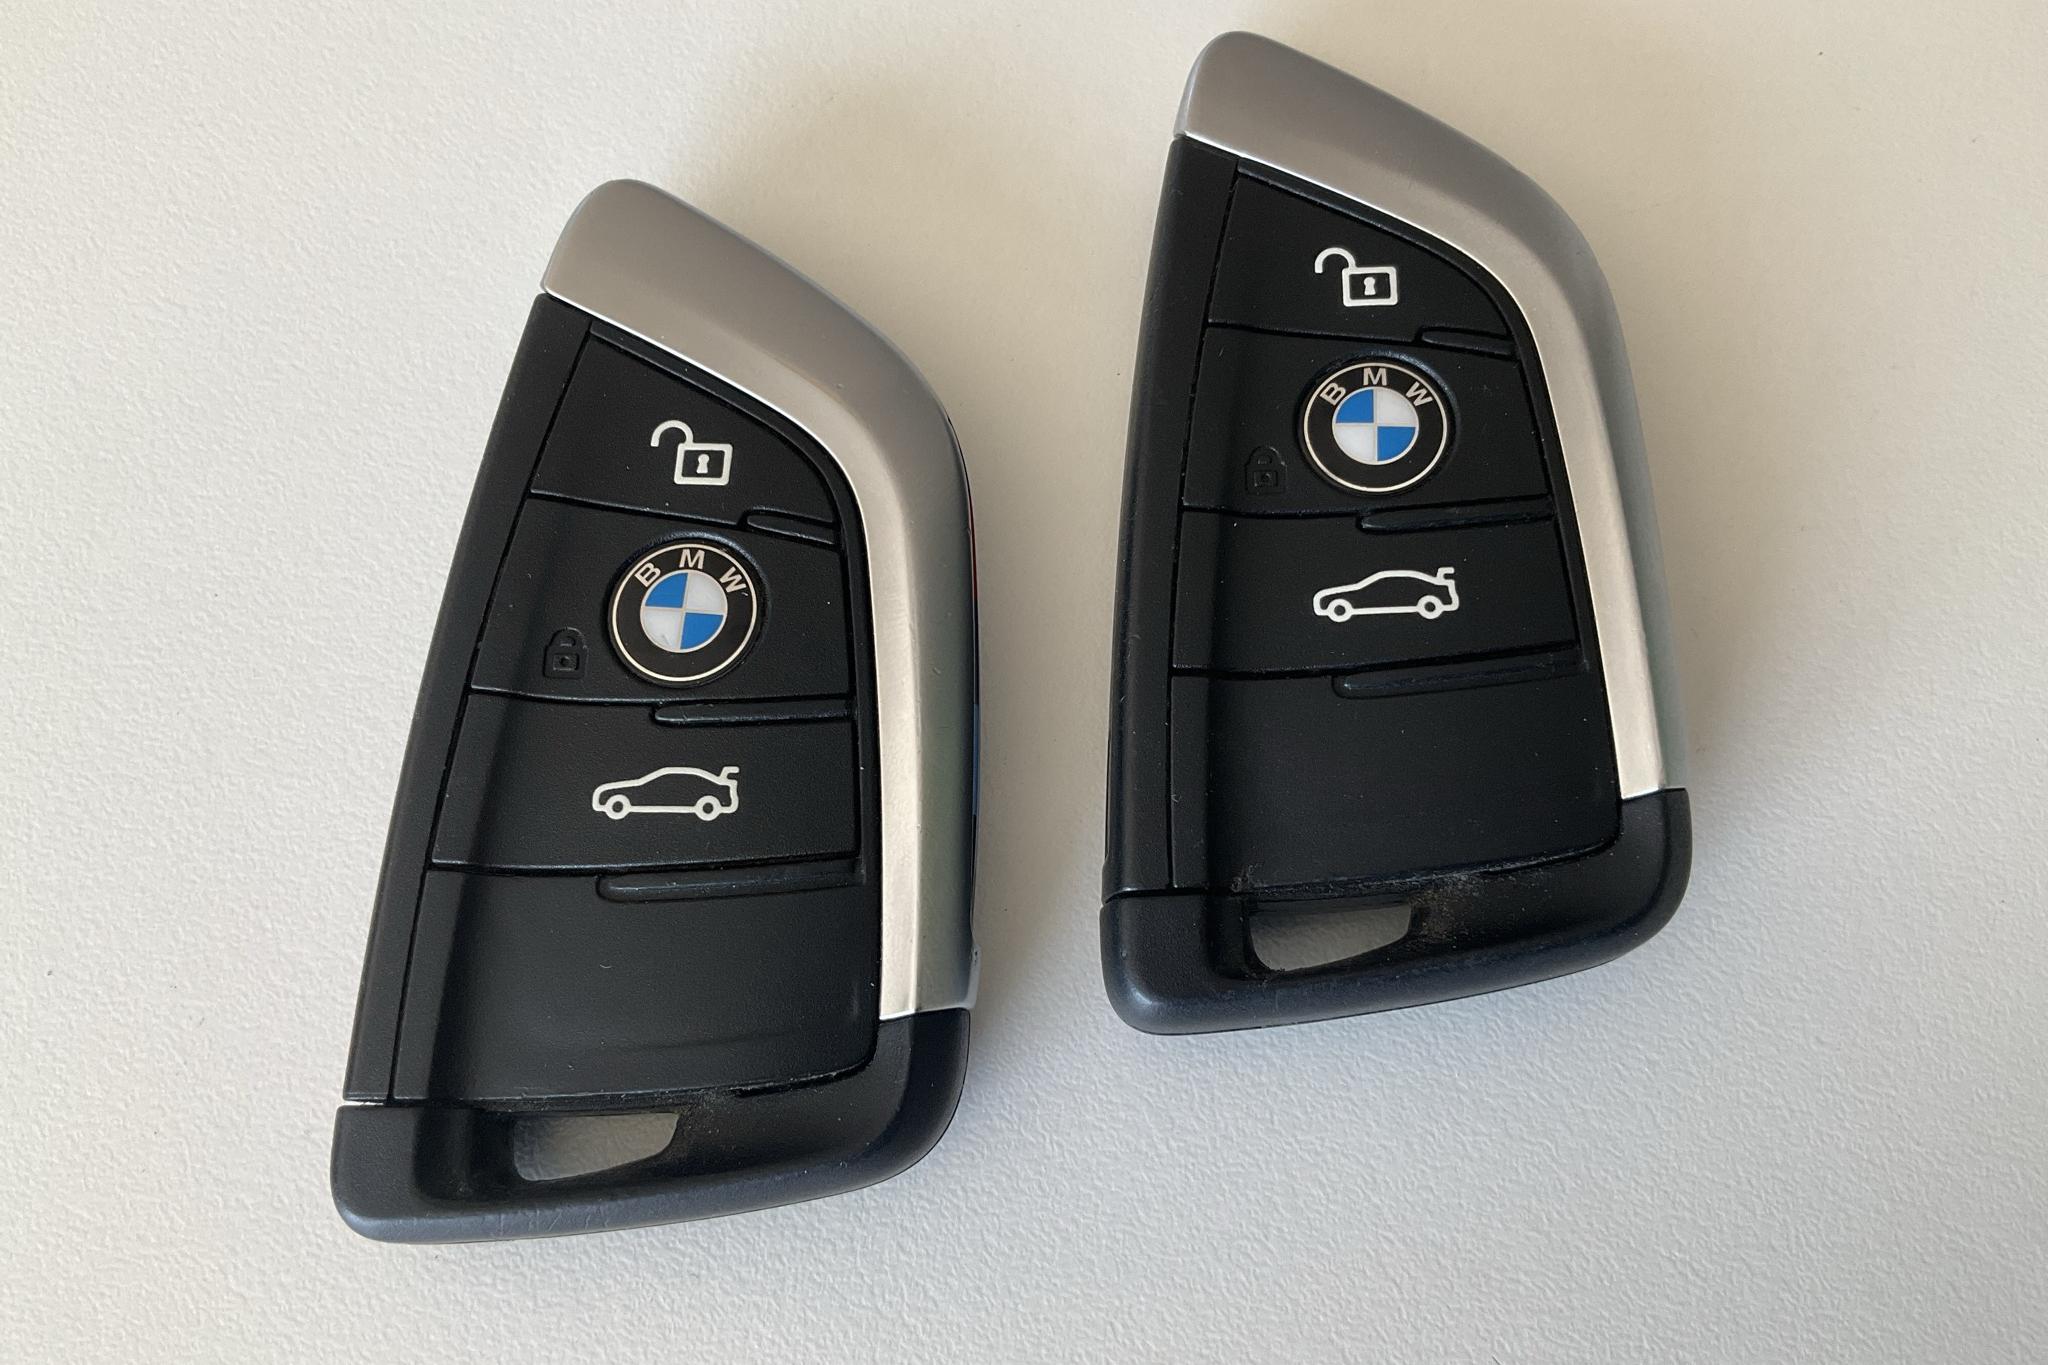 BMW X1 xDrive25e 9,7 kWh LCI, F48 (220hk) - 9 386 mil - Automat - vit - 2021